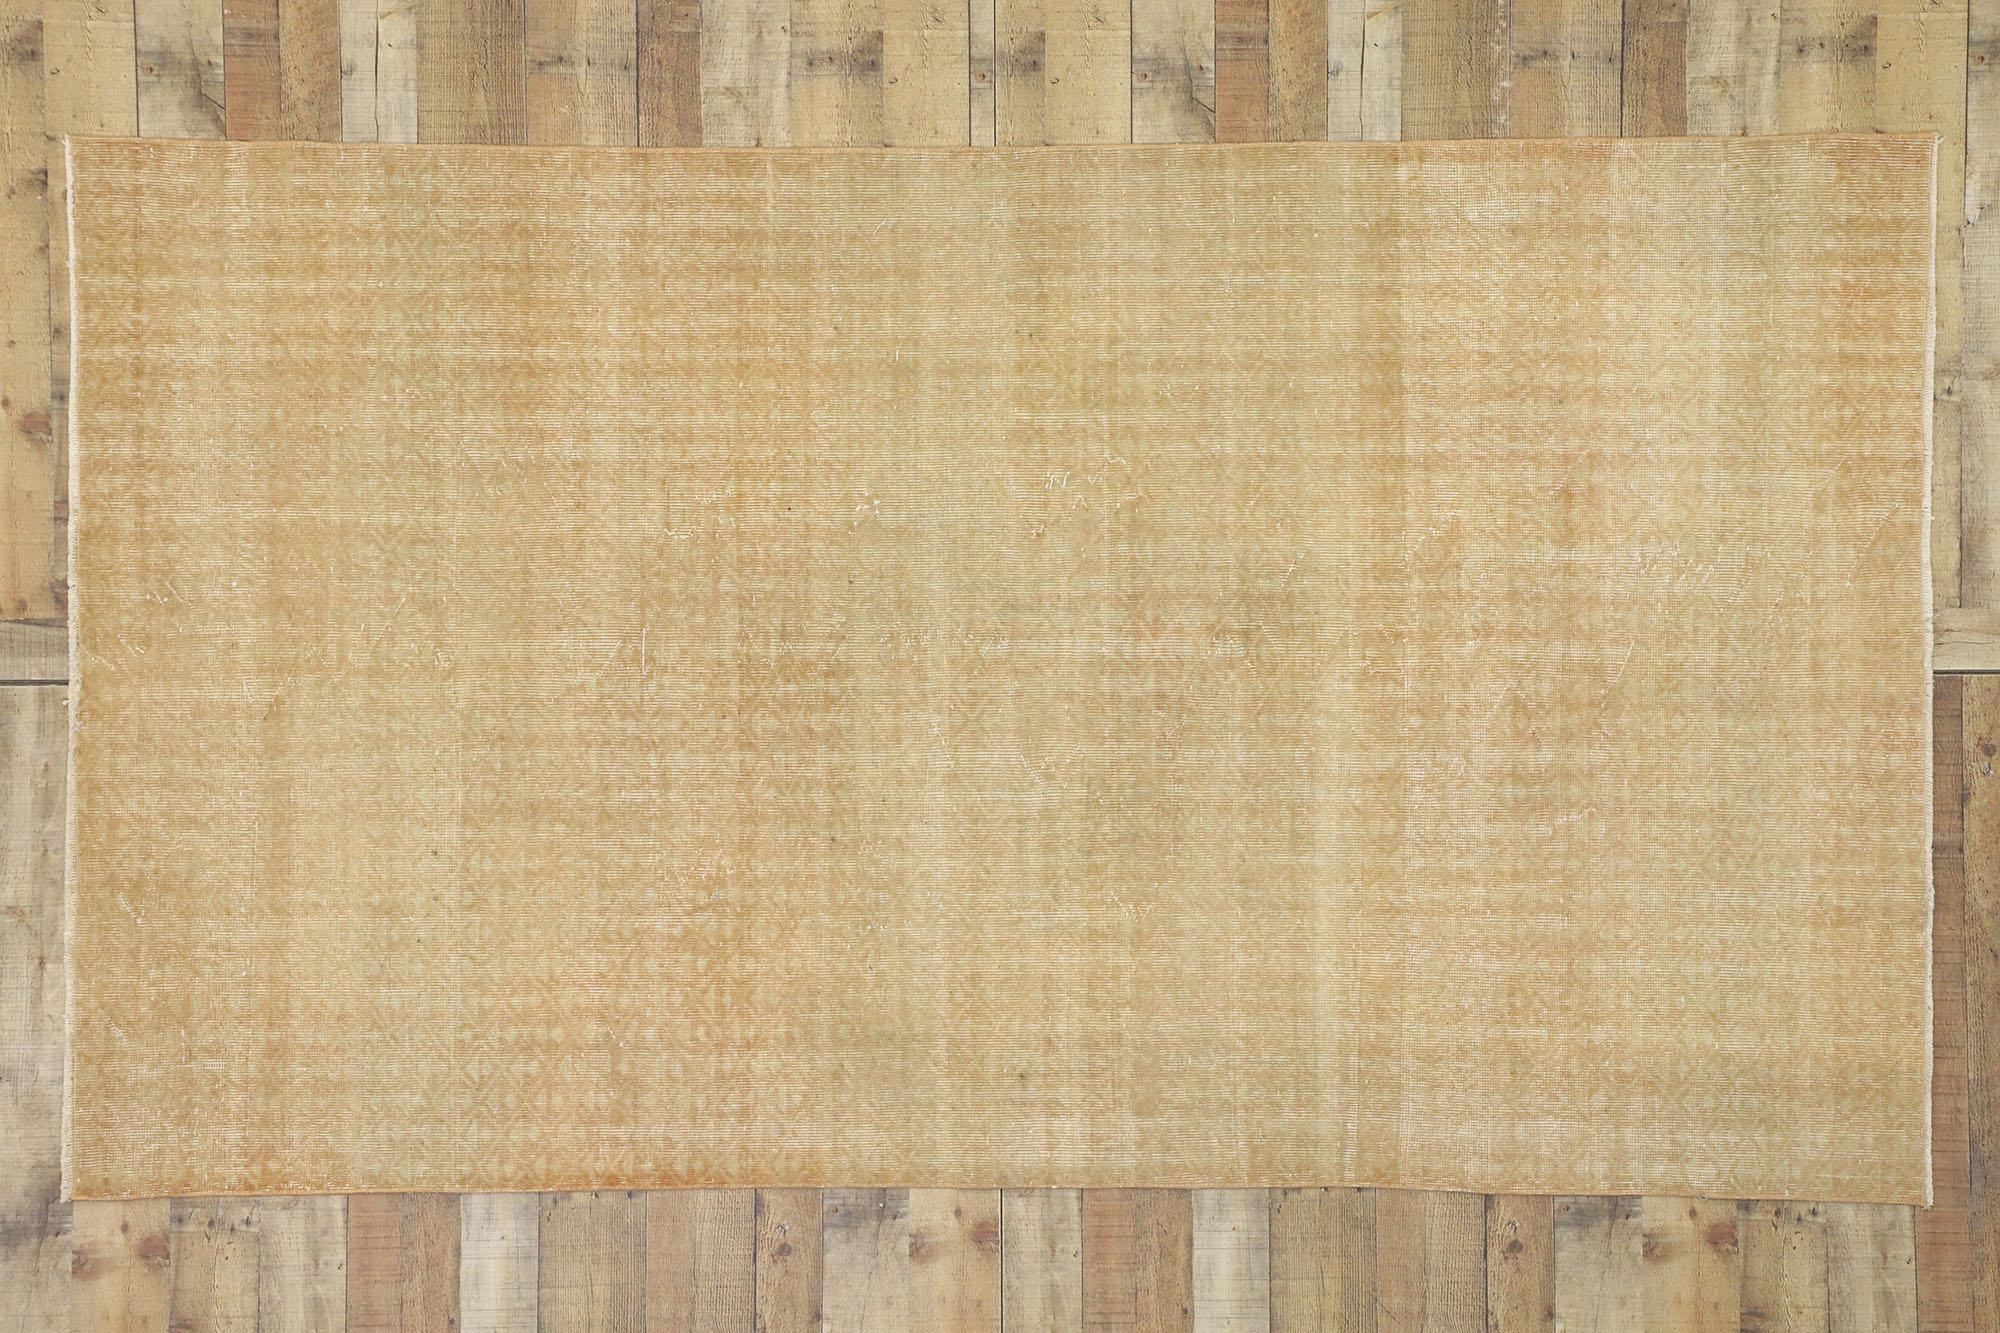 52593, Zeki Muren strapazierter türkischer Sivas-Teppich im Modern-Rustic-Stil 05'02 x 09'00. Warm und einladend, kombiniert mit gedämpften Farben, verkörpert dieser türkische Sivas-Teppich im Used-Look einen rustikalen, modernen Stil. Es zeichnet